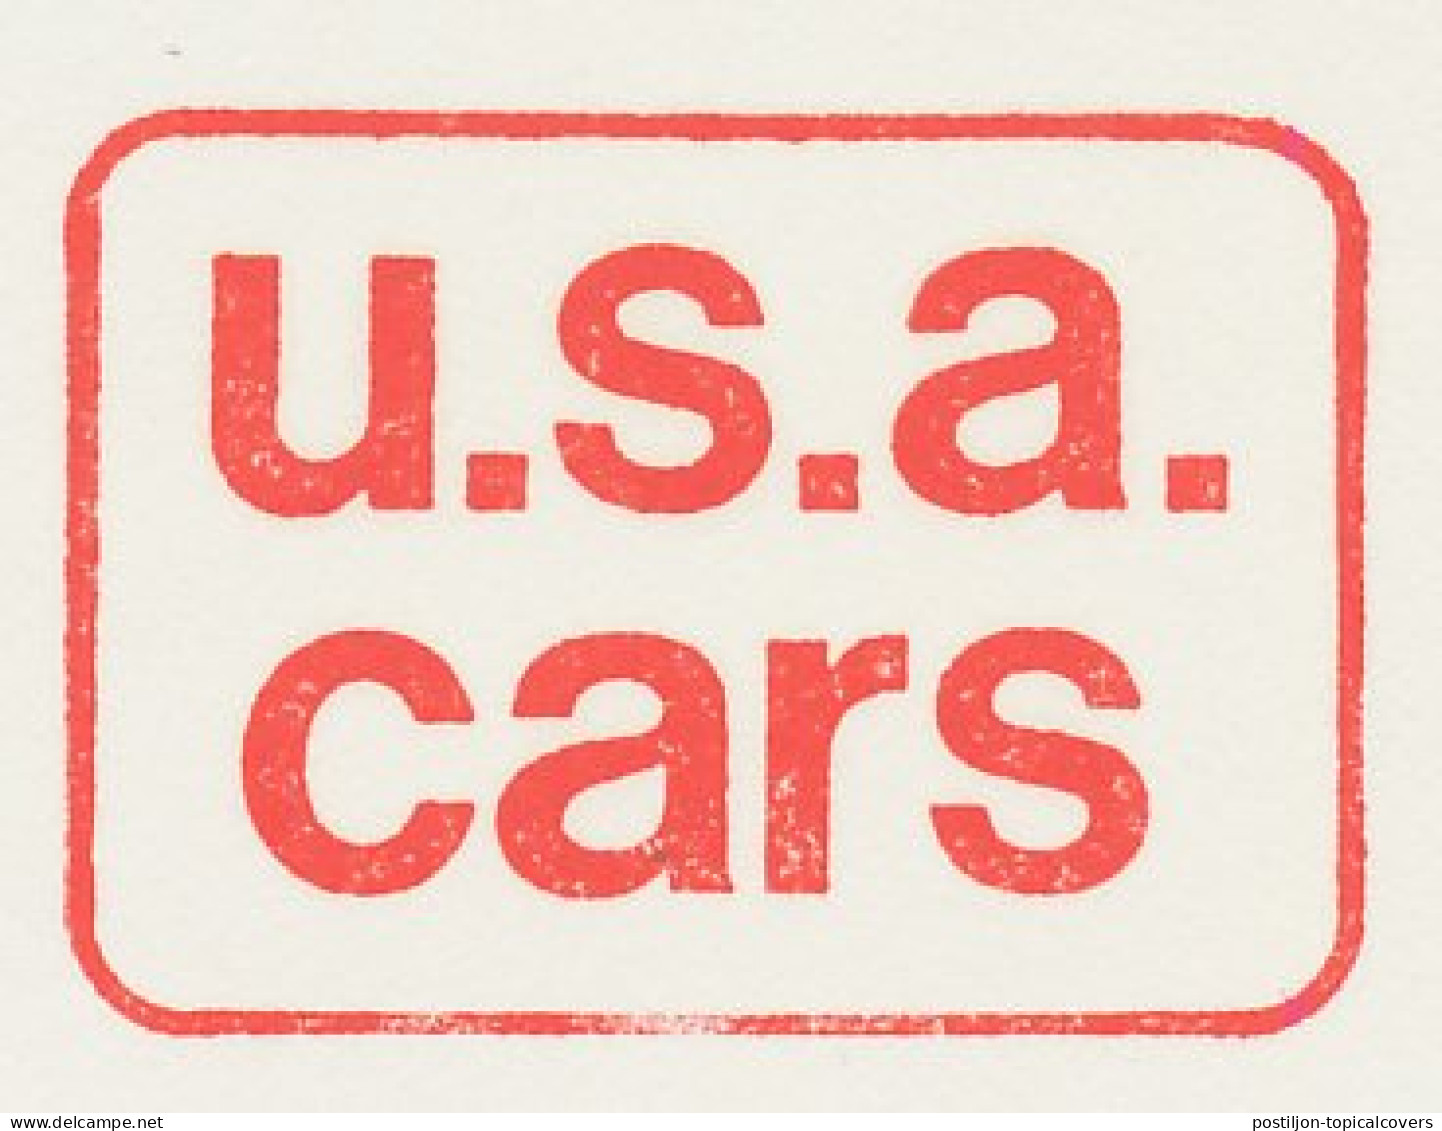 Proof / Test Meter Strip Netherlands 1978 USA Cars - Voitures